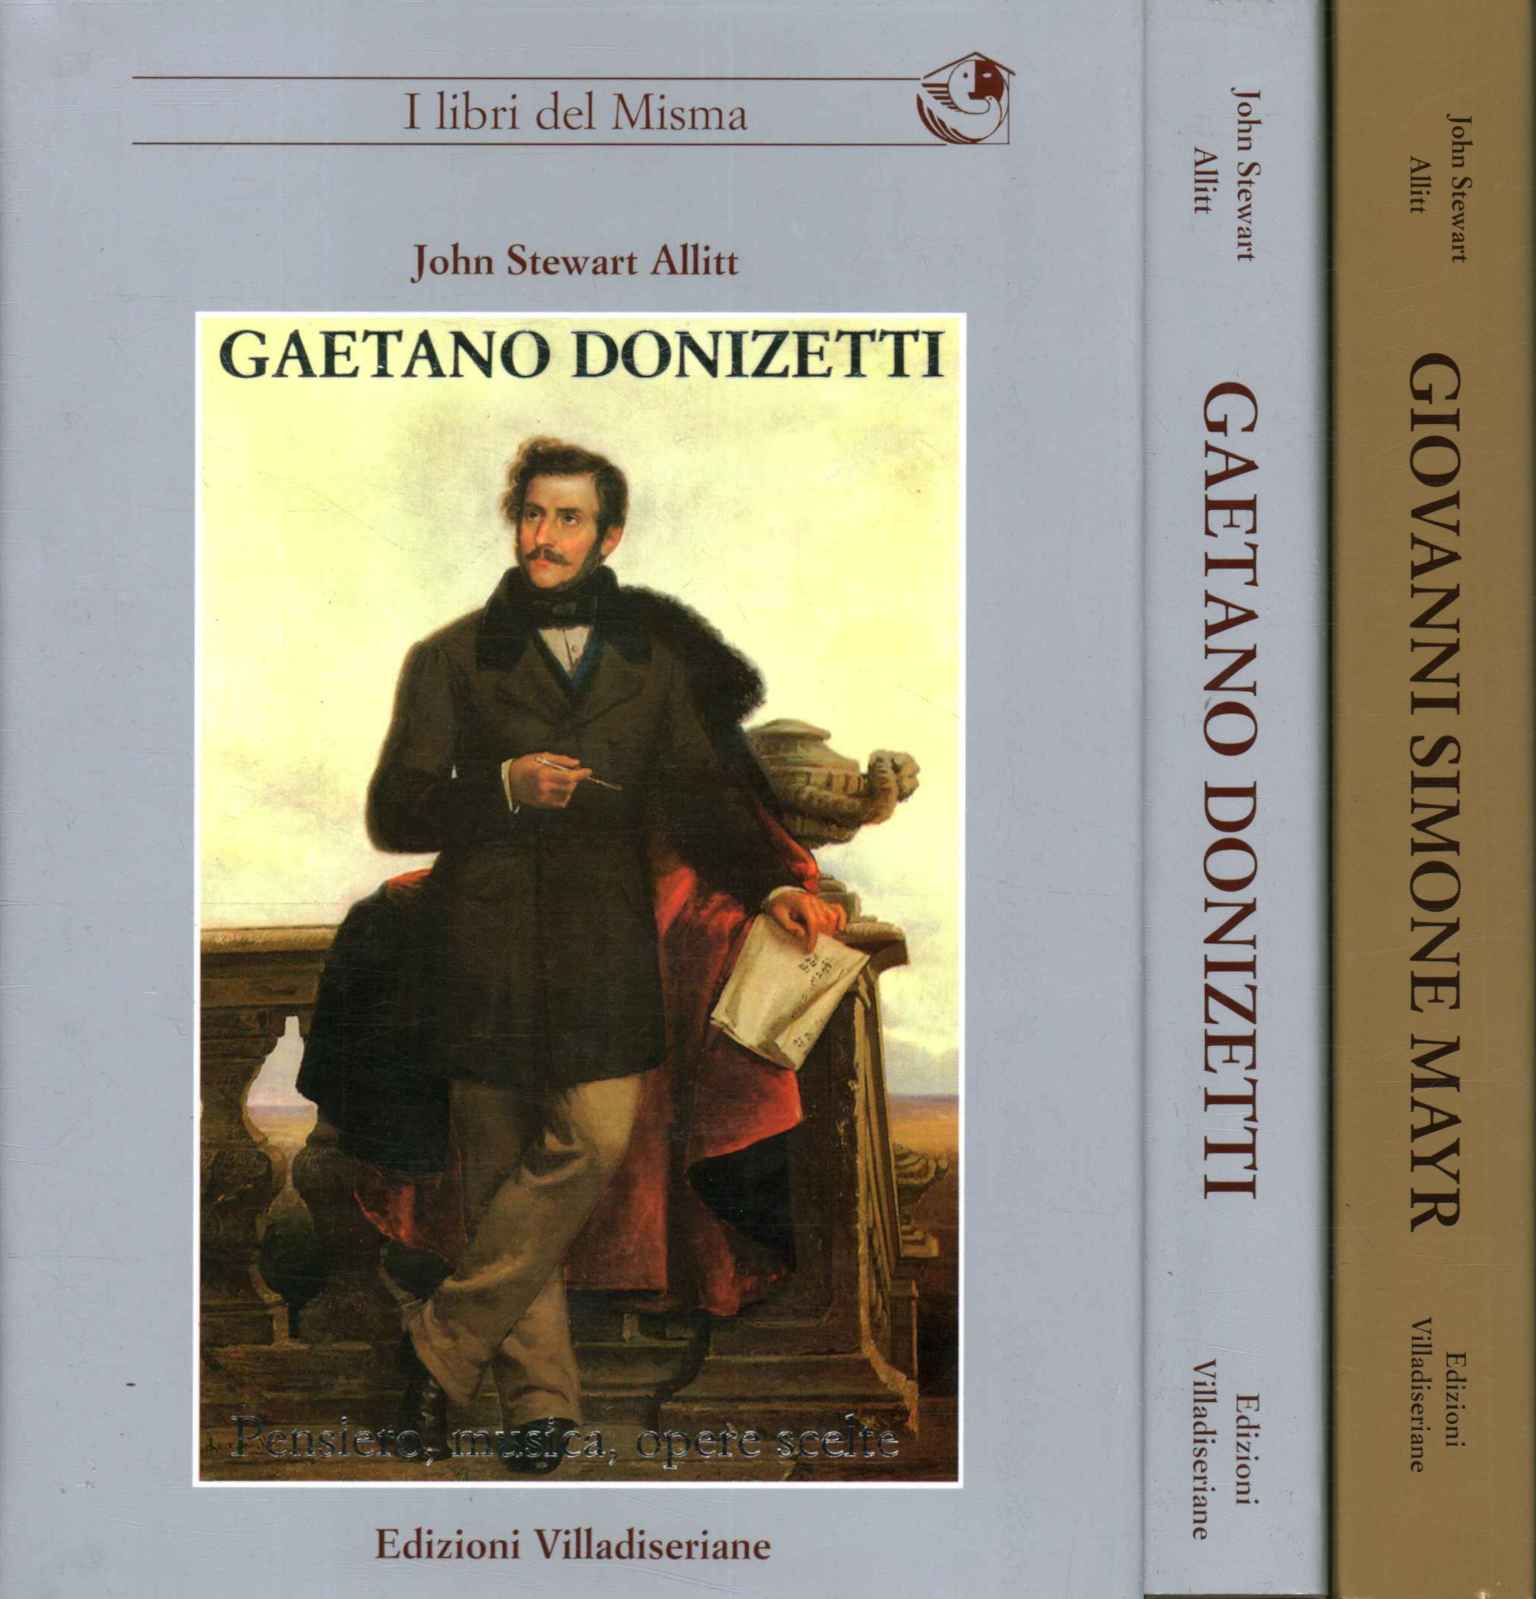 Gaetano Donizetti. La musique pensée, ça marche